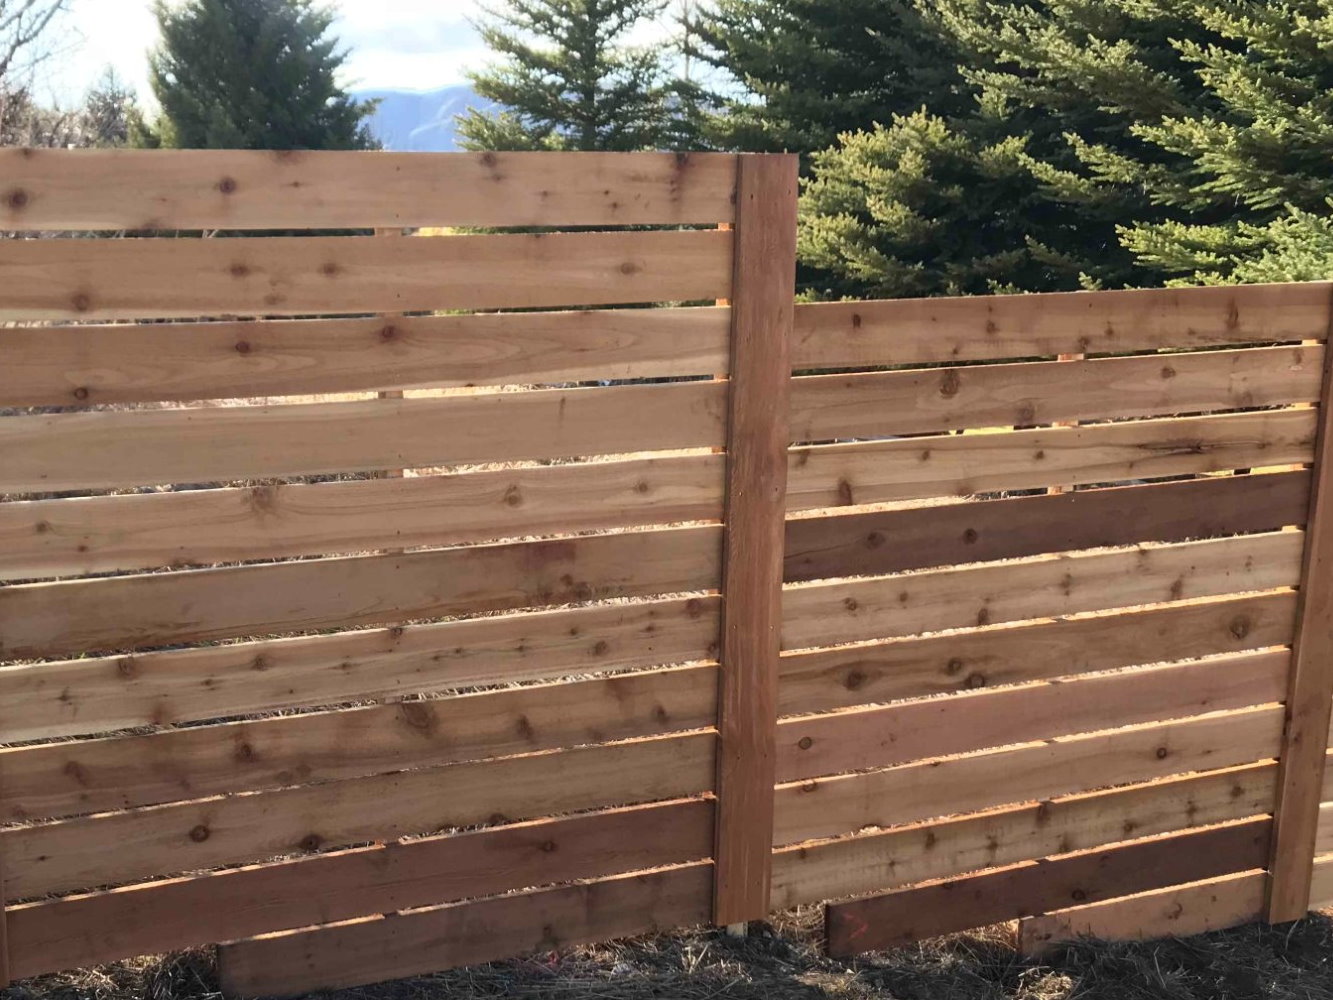 Ranchettes WY horizontal style wood fence